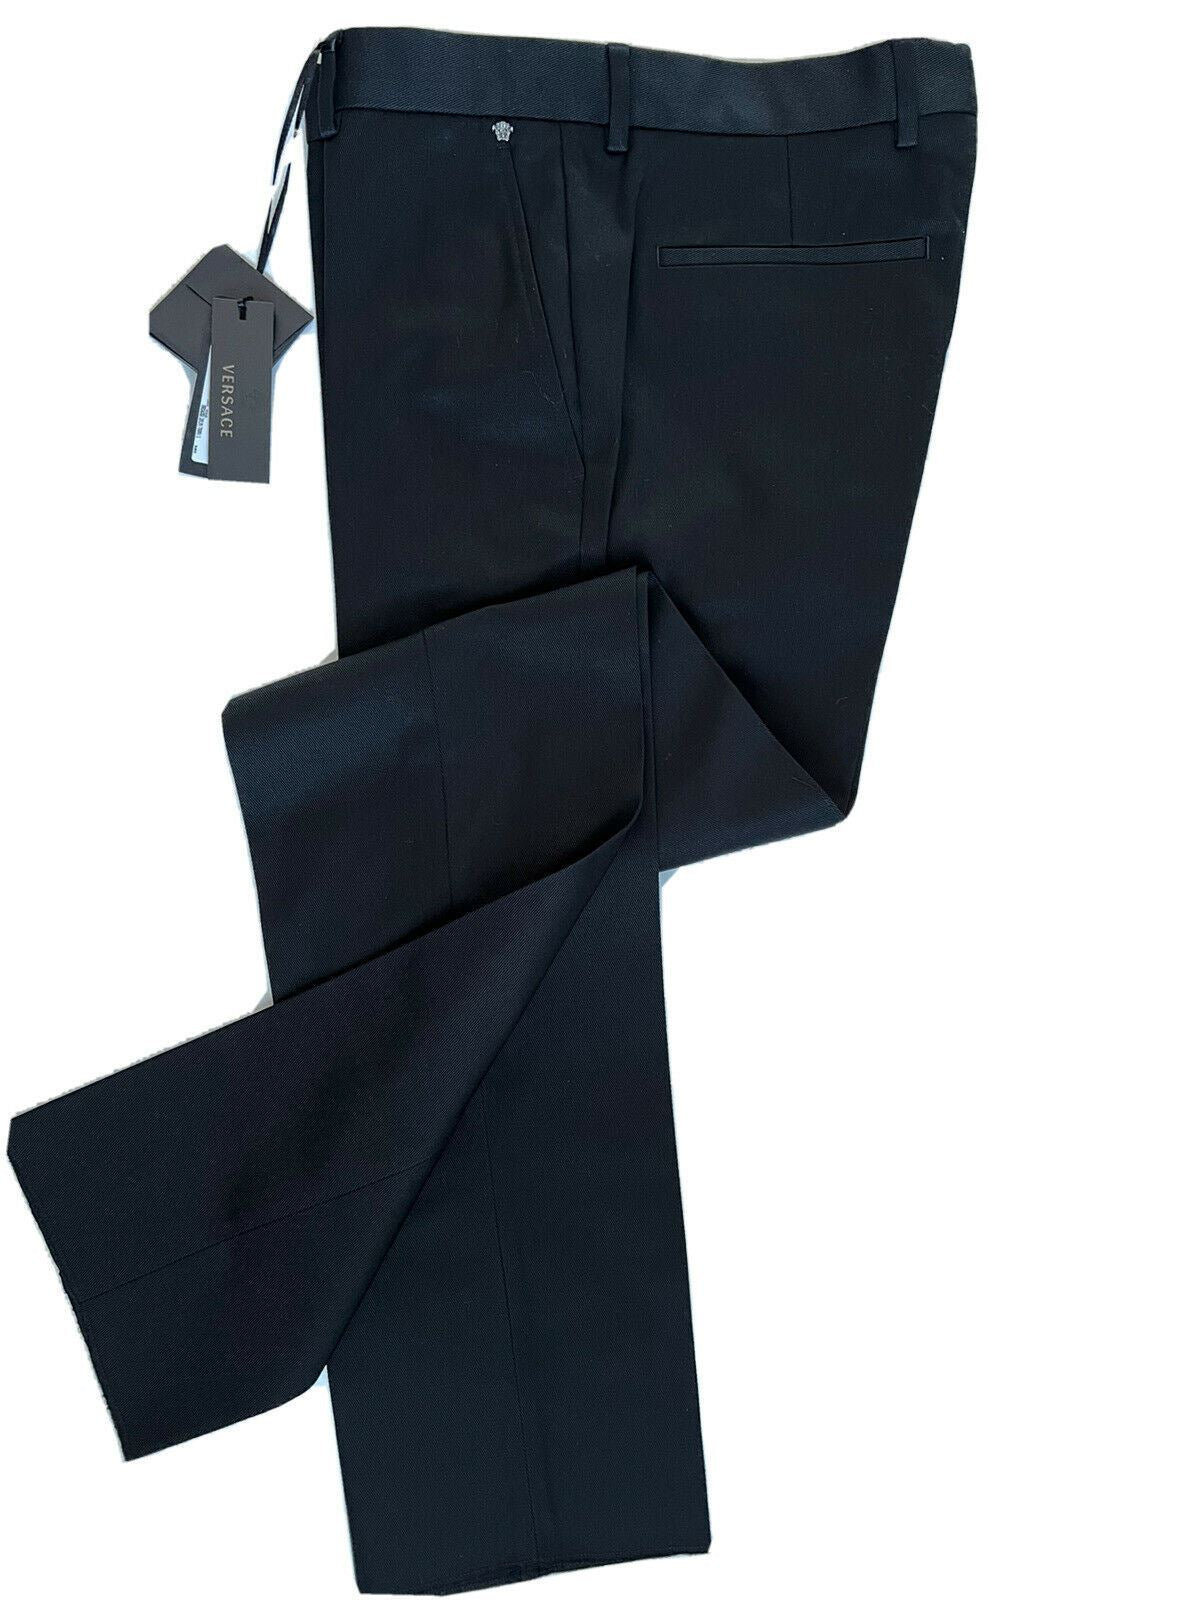 Neu mit Etikett: 550 $ Versace Herren-Hose in Schwarz, 36 US (52 Euro), hergestellt in Italien A79901